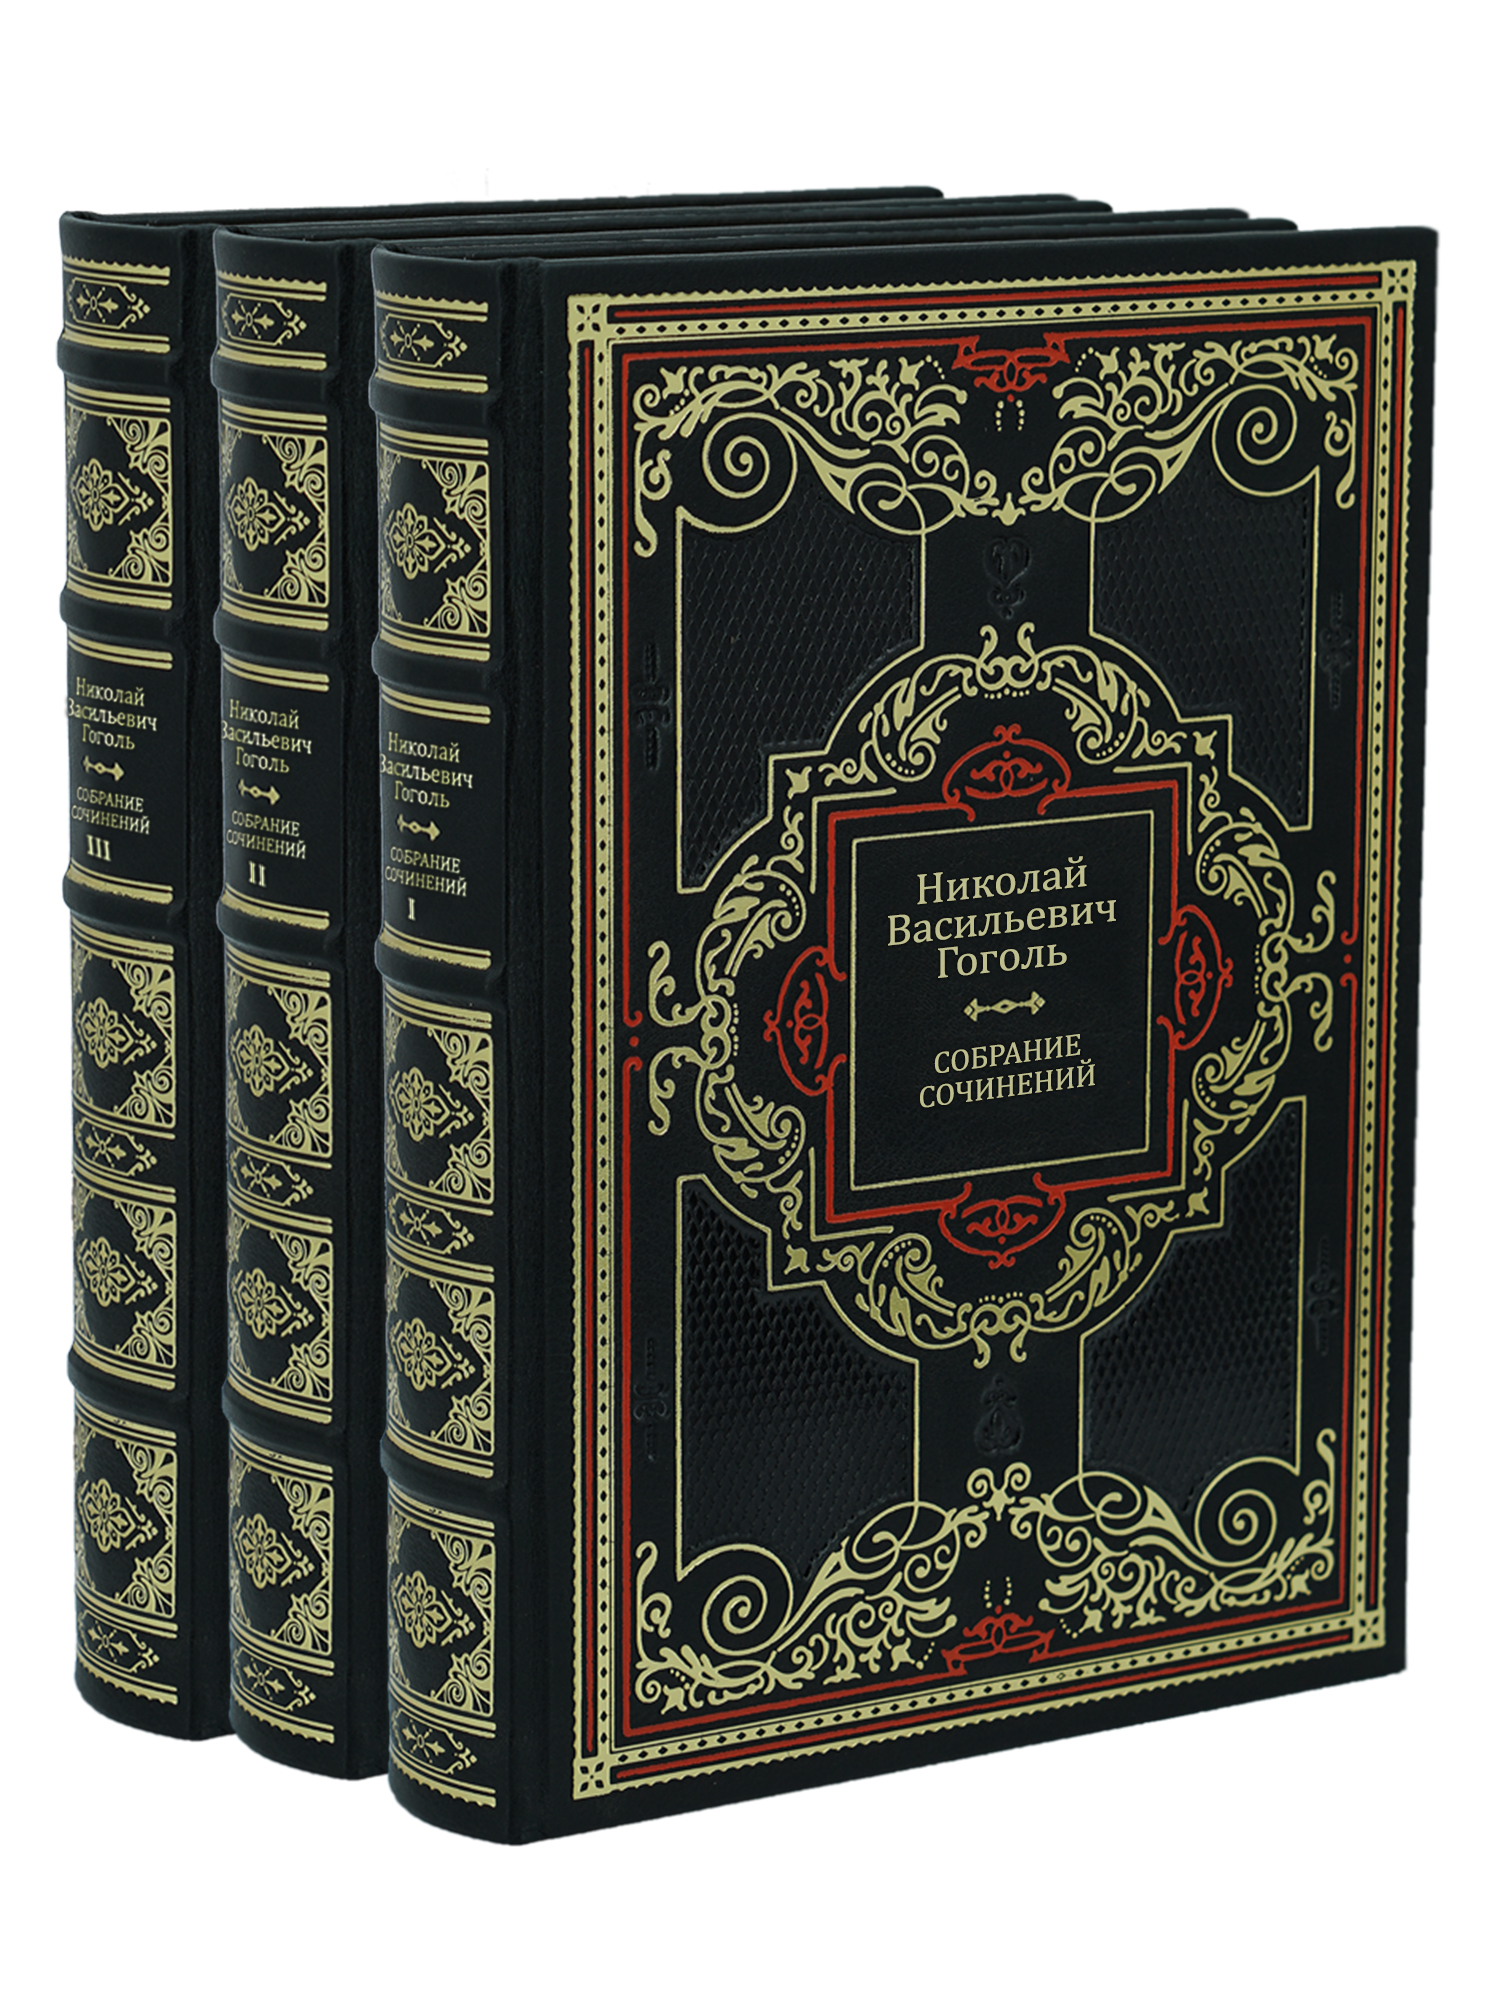 Собрание сочинений Н.В. Гоголя в 3 томах в дизайне «Барокко»